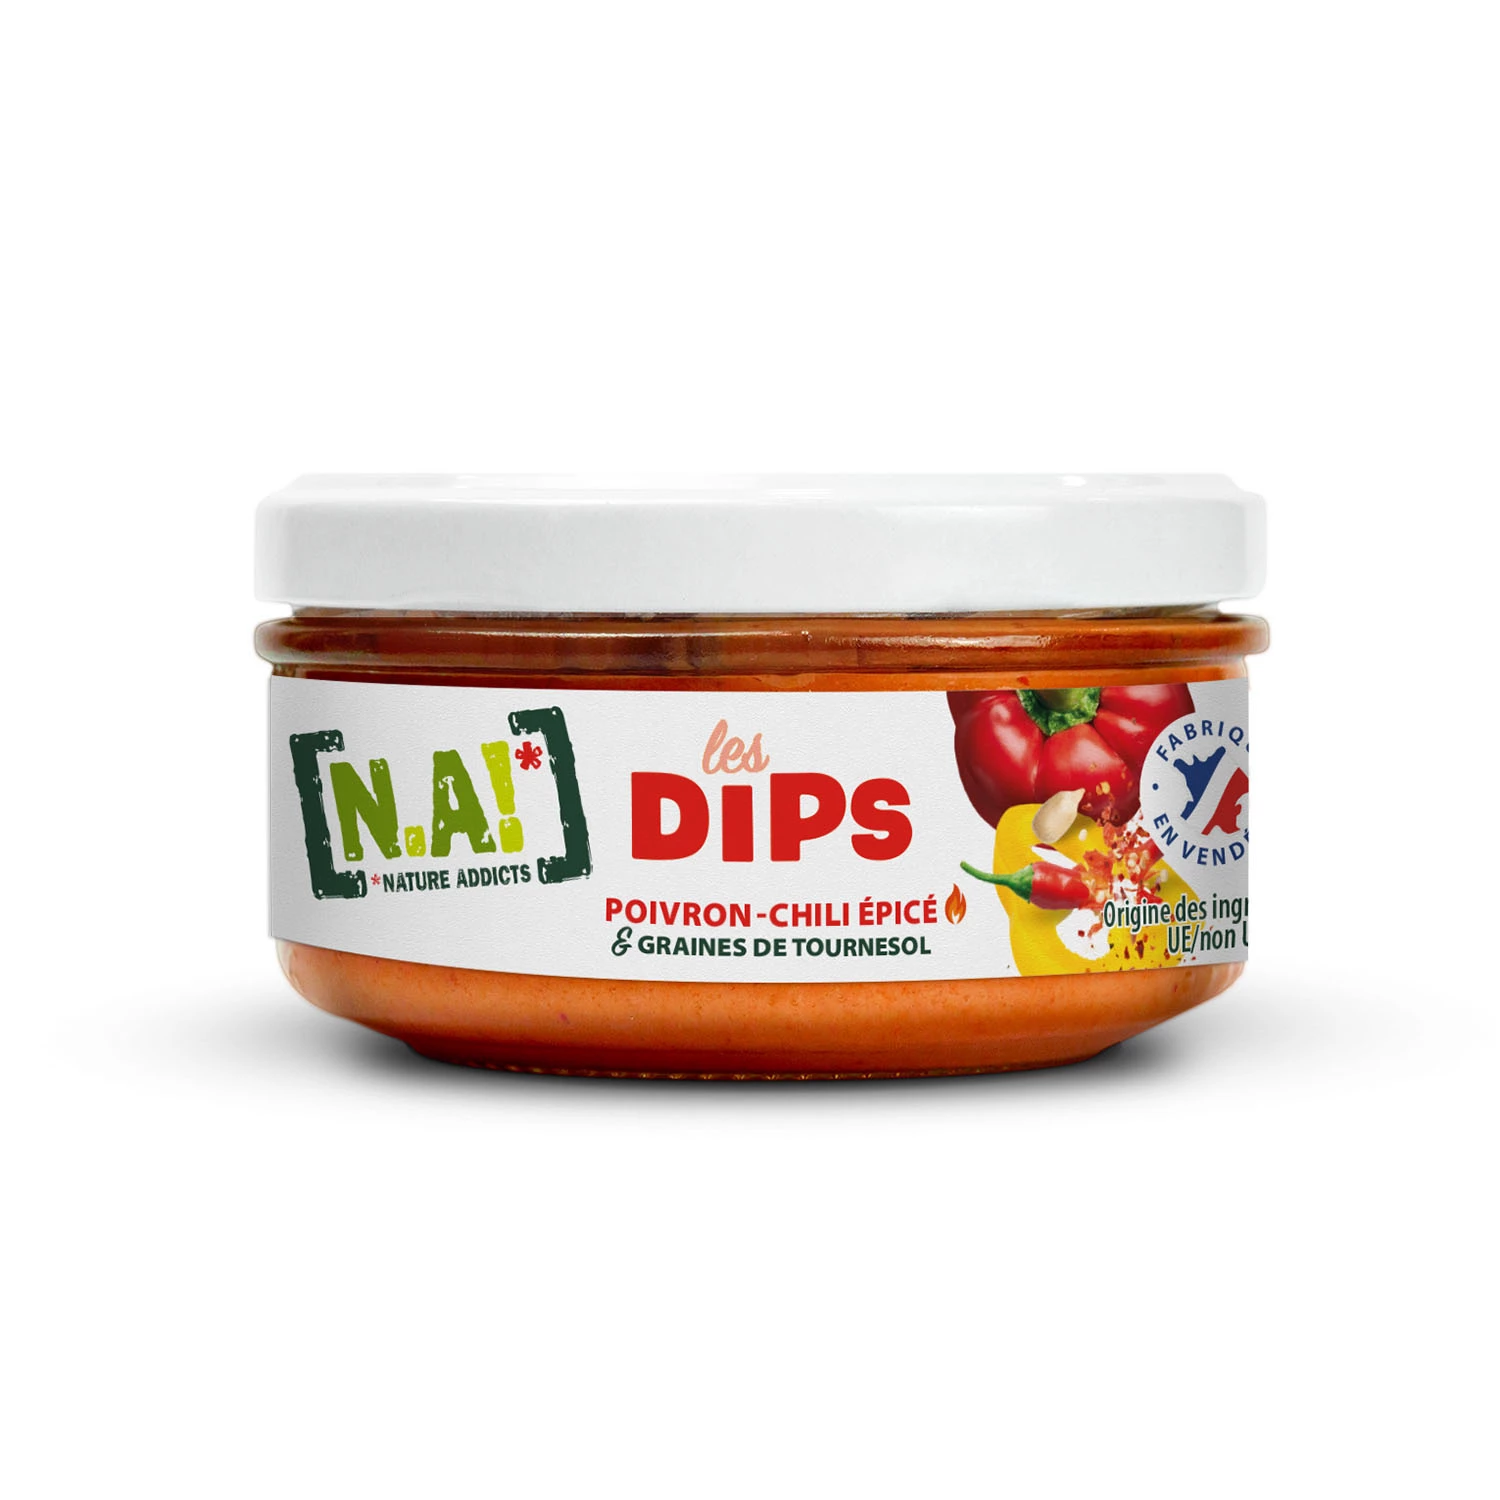 Würzige Chili-Pfeffer- und Sonnenblumenkern-Dips, 140 g – N.A.!